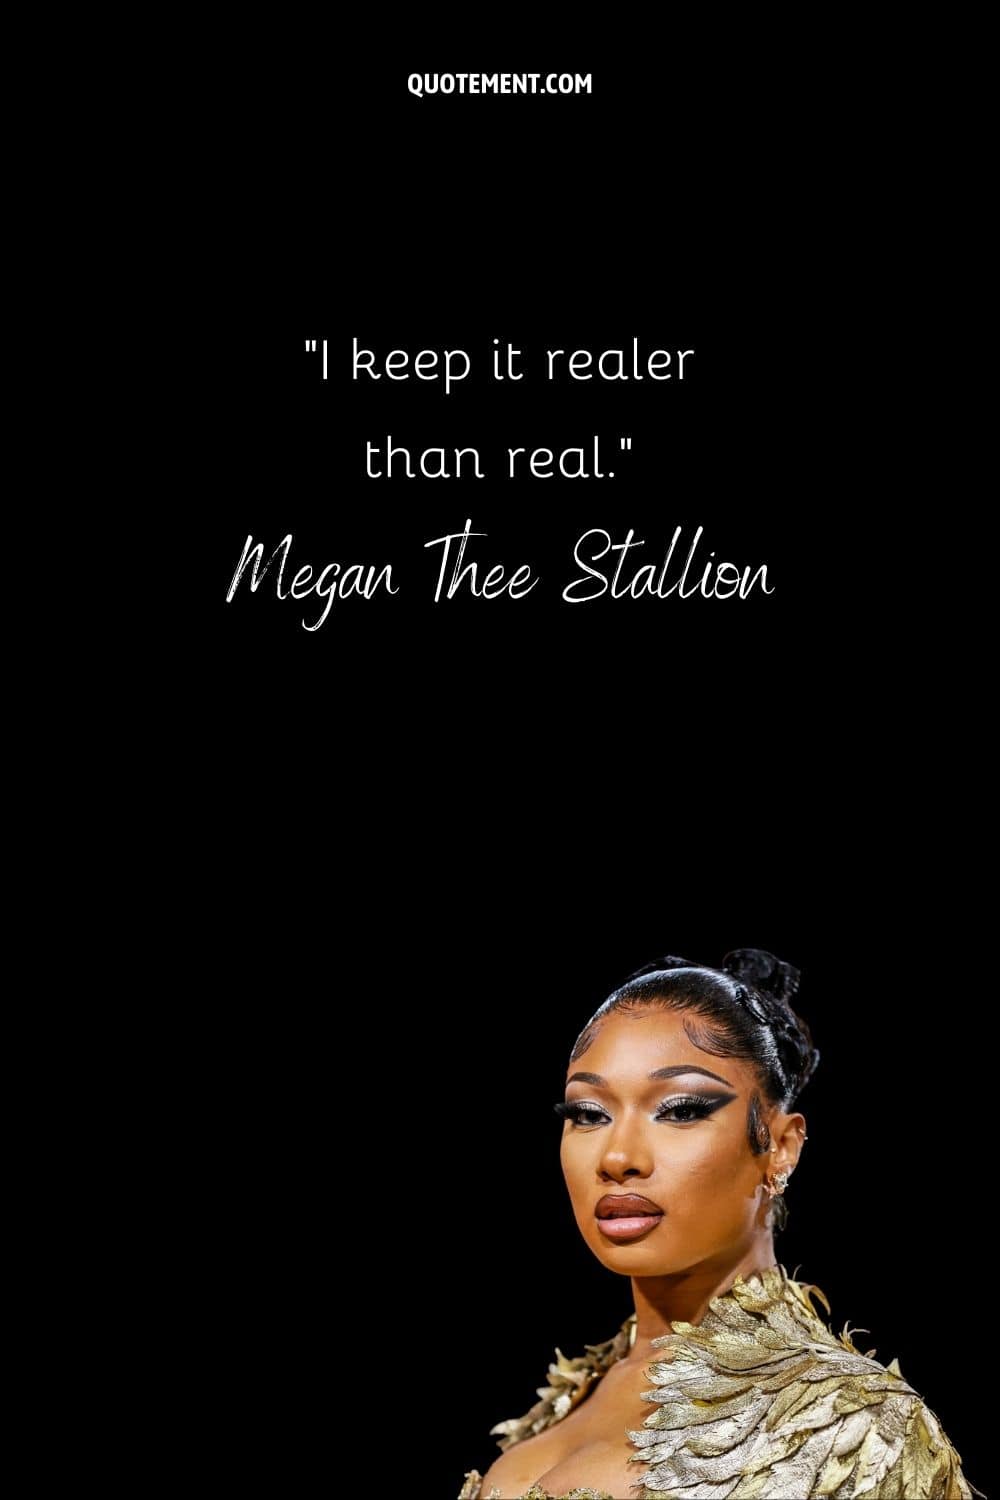 "Lo mantengo más real que lo real". - Megan Thee Stallion